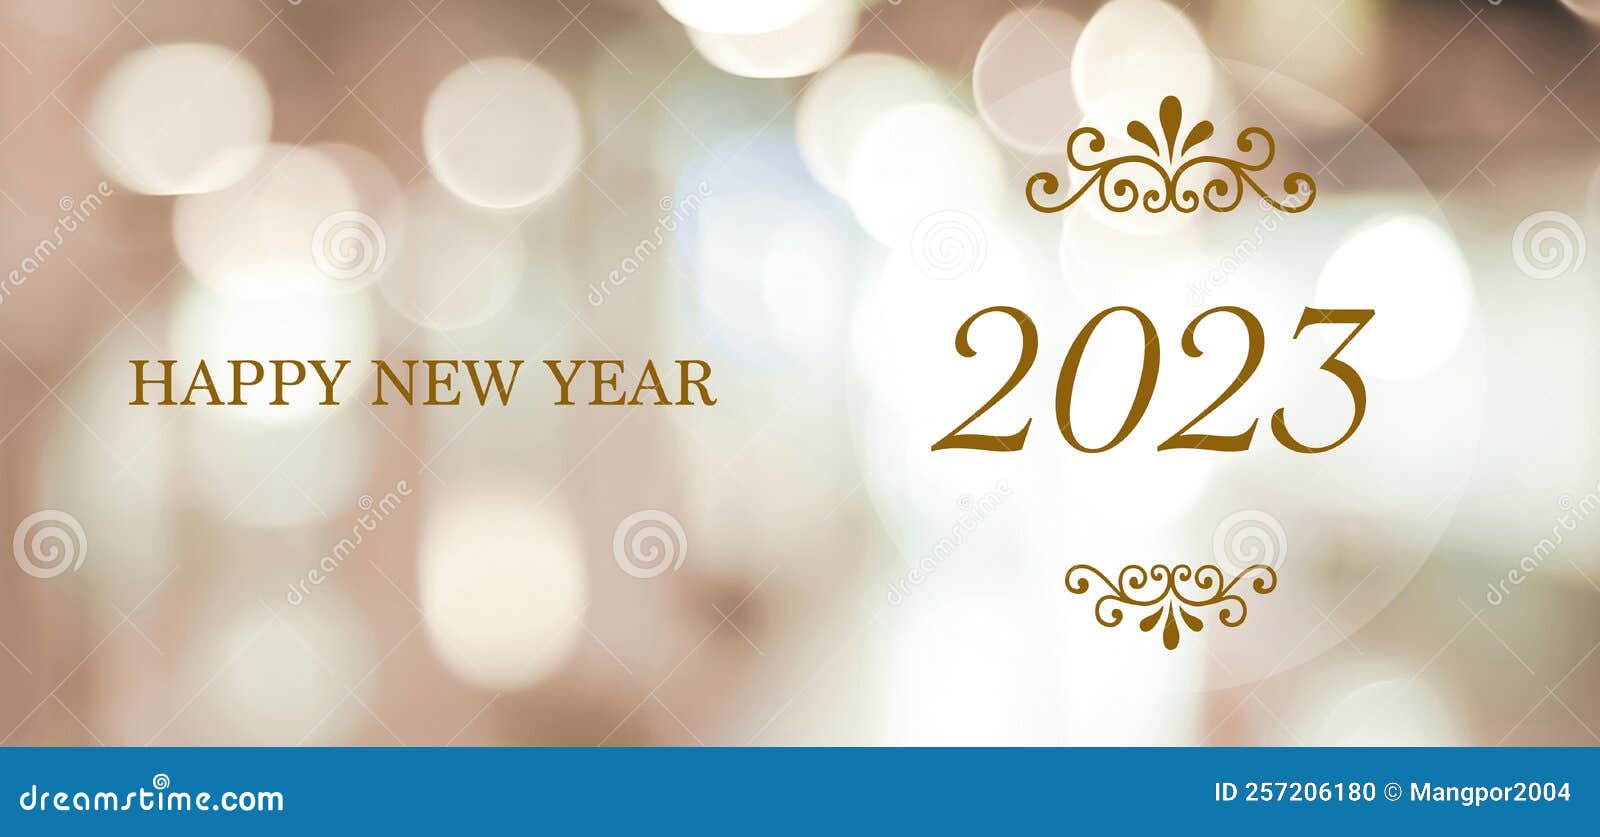 Năm mới đã đến rồi, bạn đã sẵn sàng để chào đón nó chưa? Hãy xem ngay hình ảnh chúc mừng năm mới 2024 với các thông điệp ý nghĩa và đầy niềm vui để tạo động lực cho một năm mới thành công và hạnh phúc nhé!